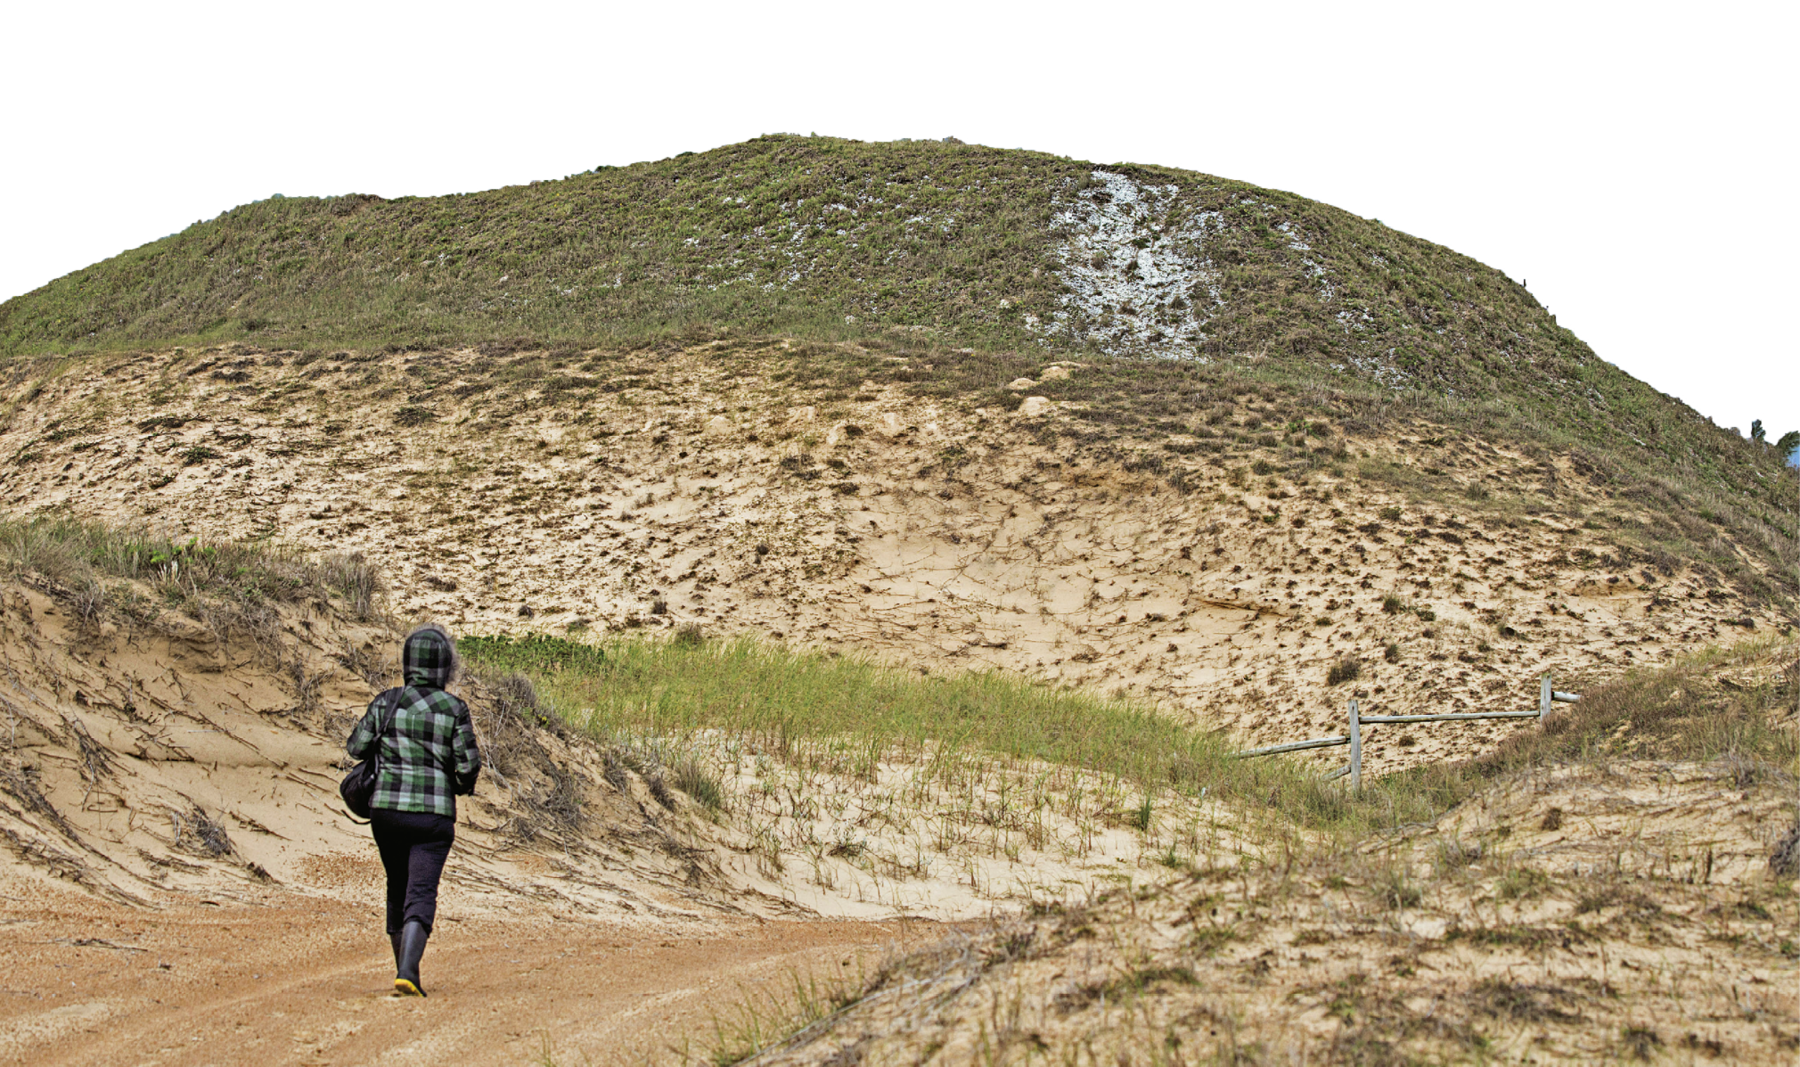 Fotografia. Destaque para montanha alta, coberta por areia, conchas e vegetação rasteira. No canto esquerdo, uma mulher vista de costas anda sobre um caminho de terra.